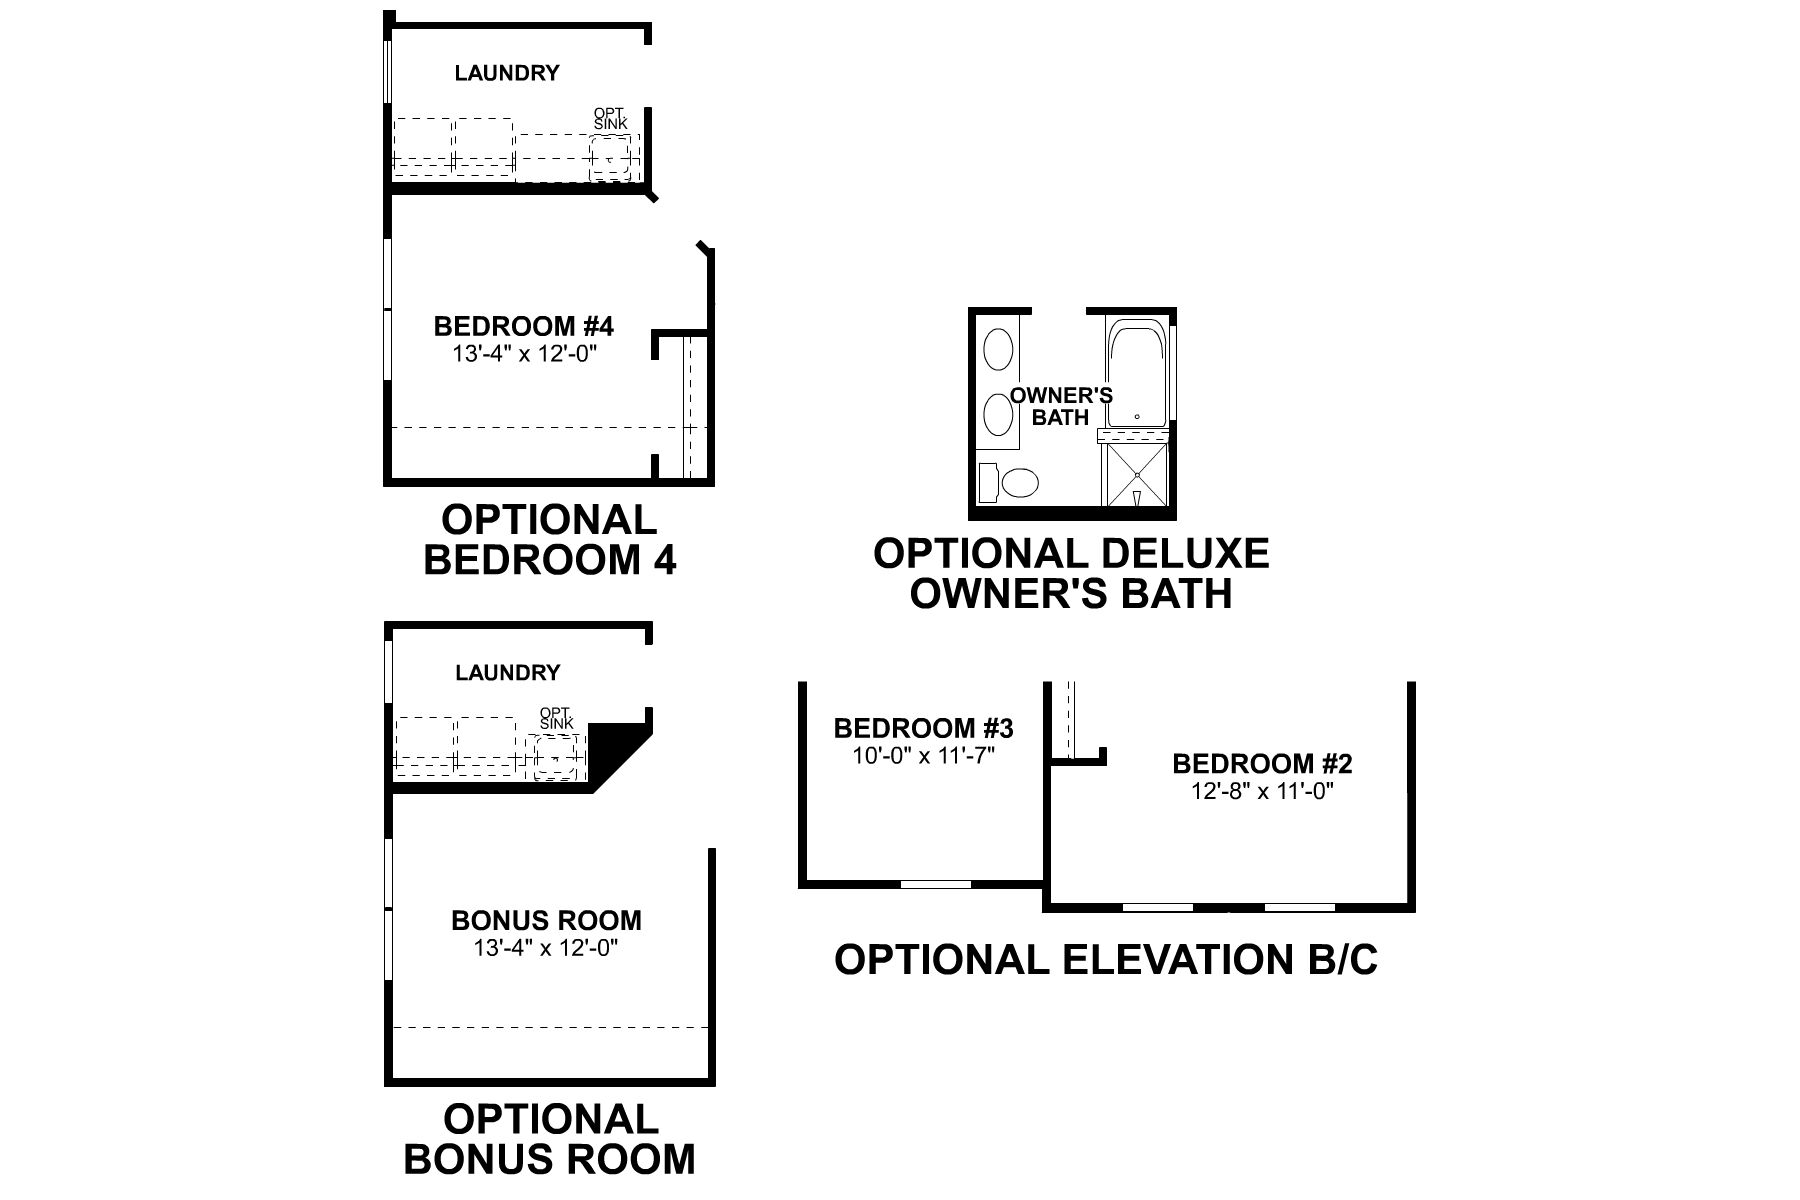 Second Floor options